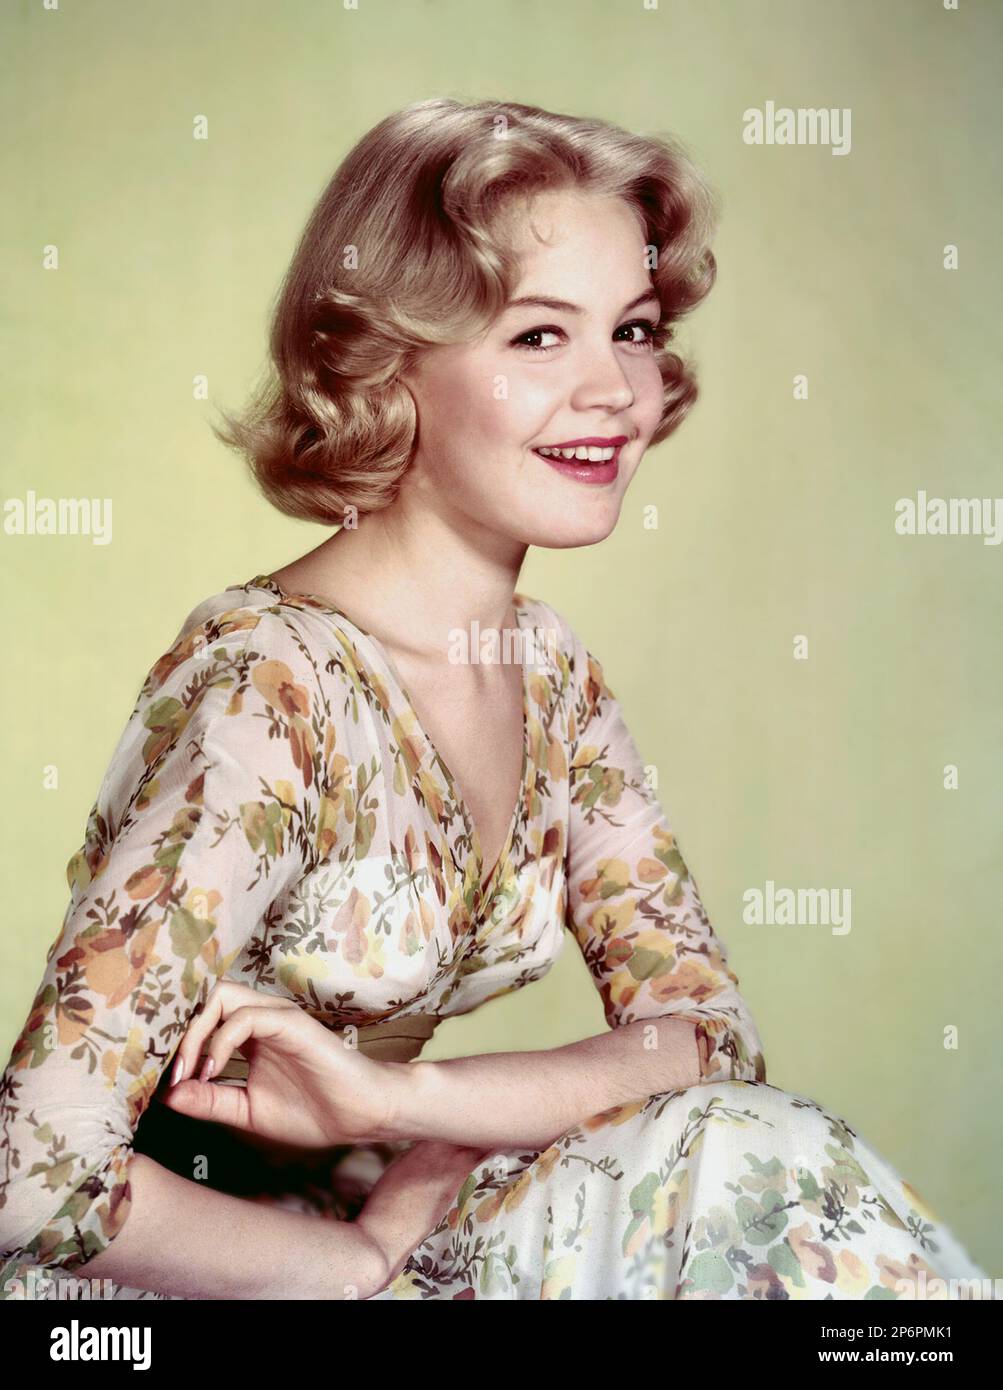 1957 : l'attrice del film SANDRA DEE ( 23 aprile 1942 Bayonne, New Jersey - 20 febbraio 2005 Thousand Oaks, California ) fino A QUANDO NON VELEGGIA di Robert Wise - CINEMA - bionda - bionda - SMILE - SORRISO ---- Archivio GBB Foto Stock